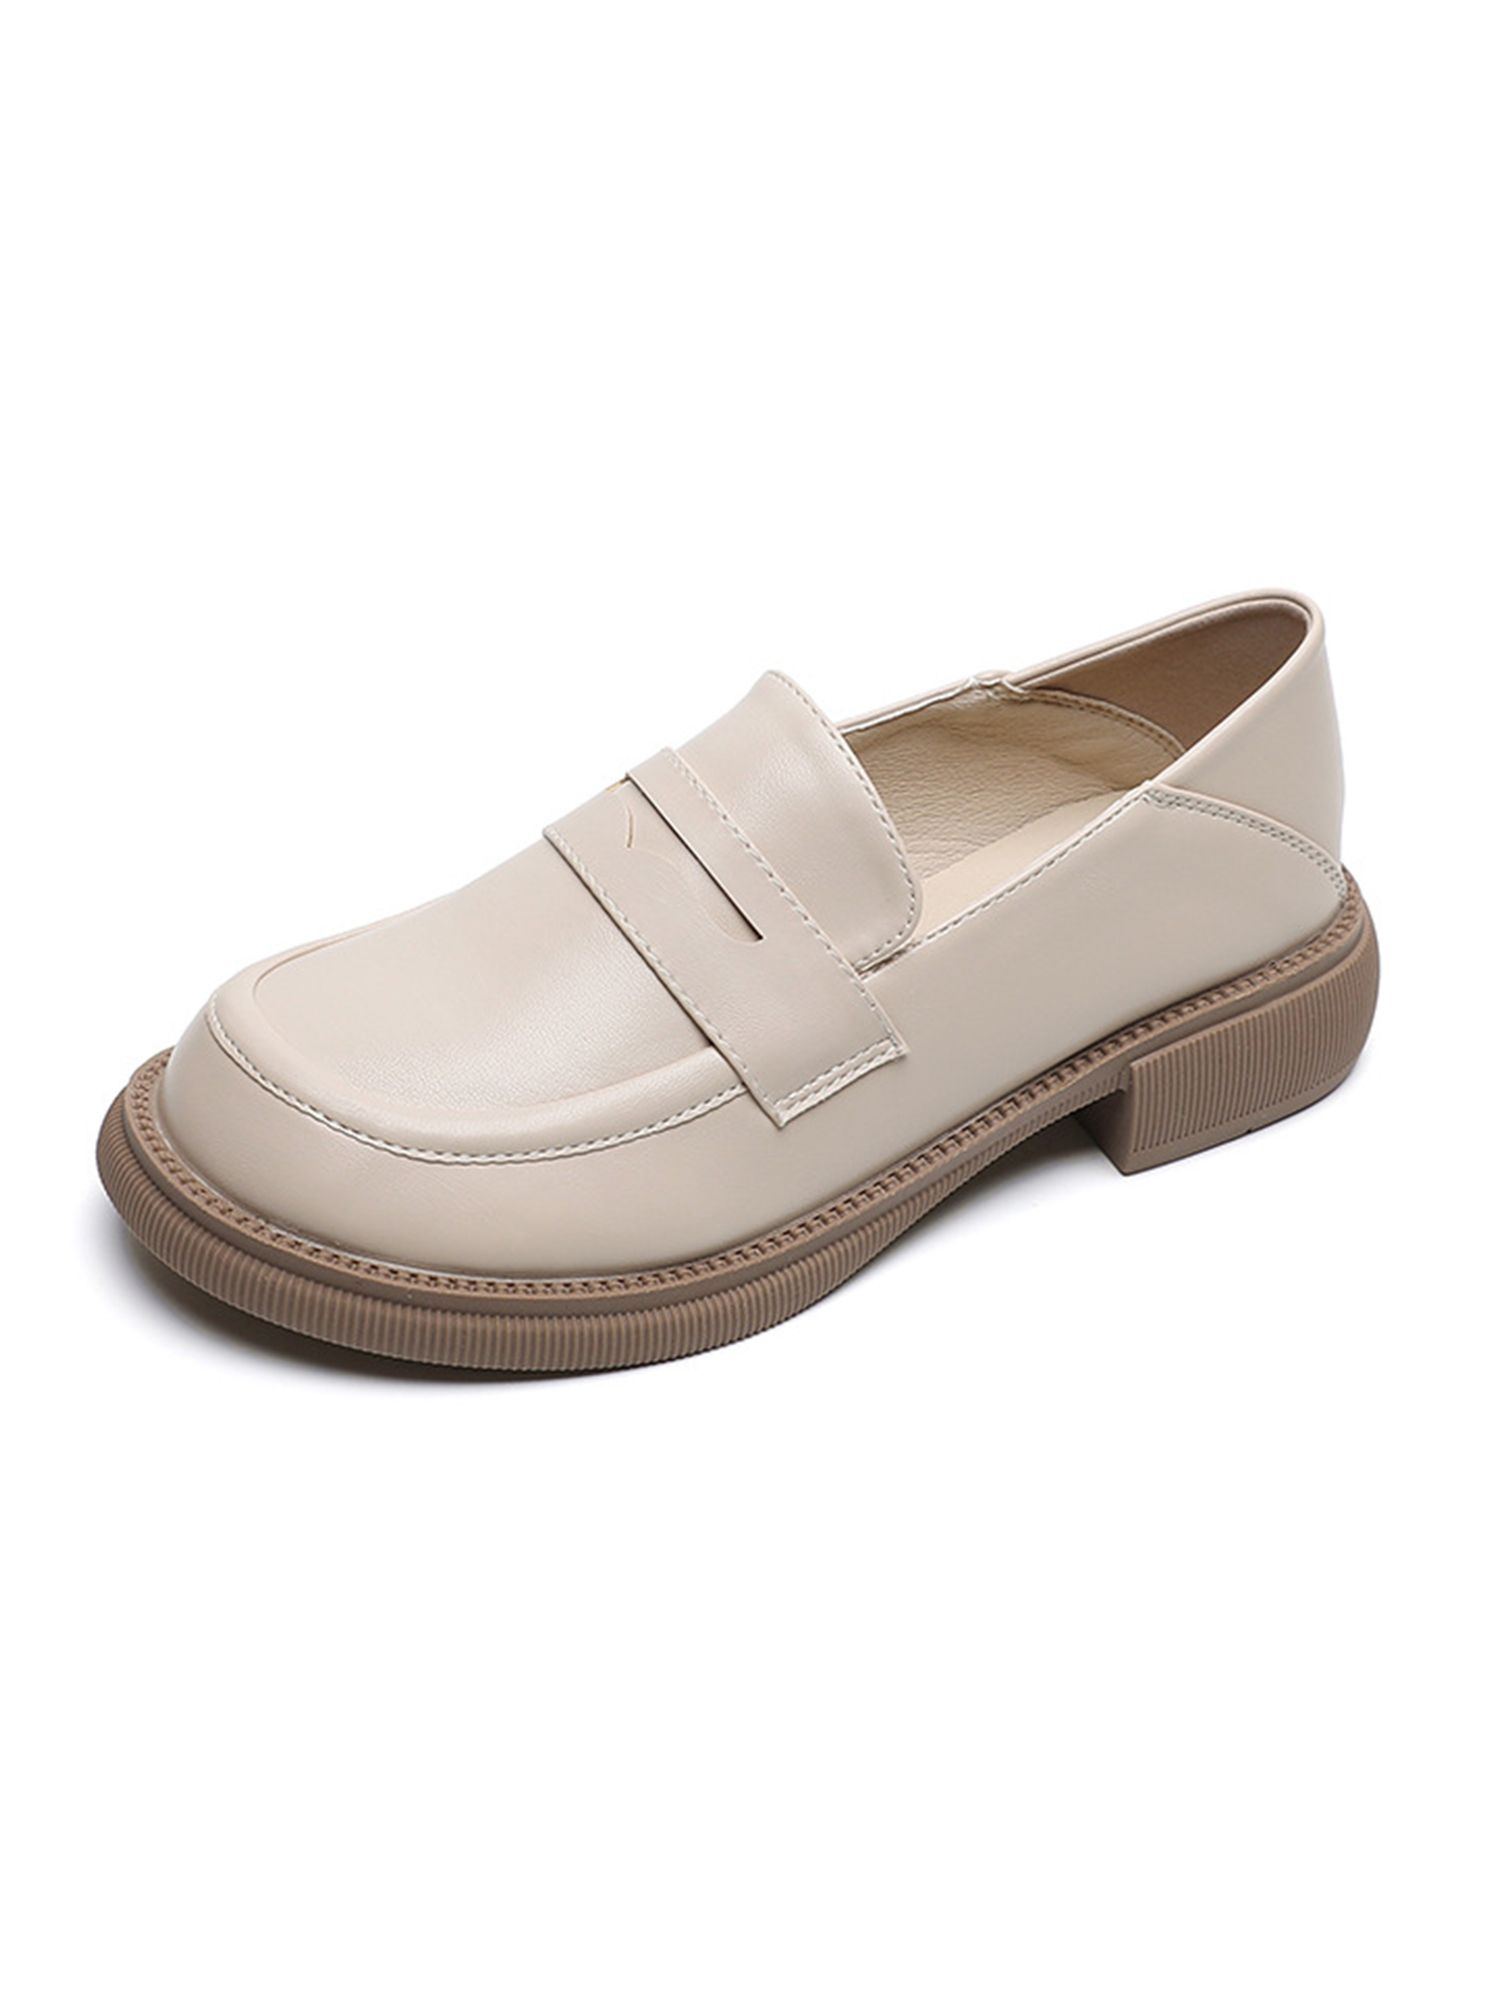 Ferndule Women Slip On Dress Shoe Work Comfort Chunky Heel Flats Loafers Apricot 8.5 | Walmart (US)